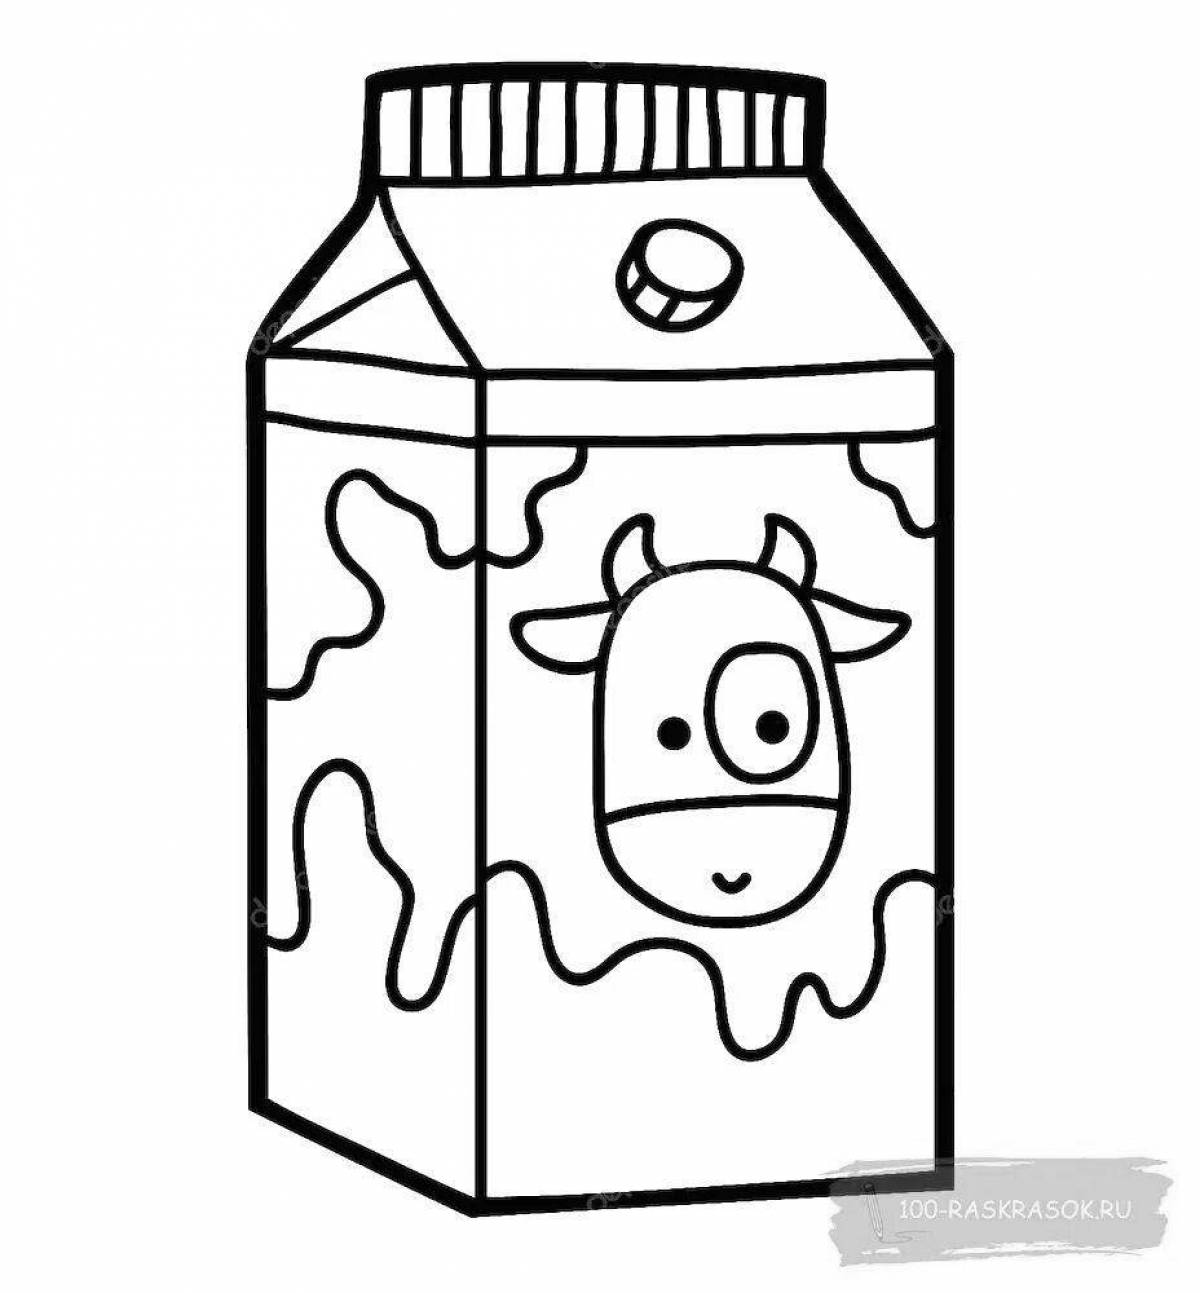 Коробка молока раскраска для детей